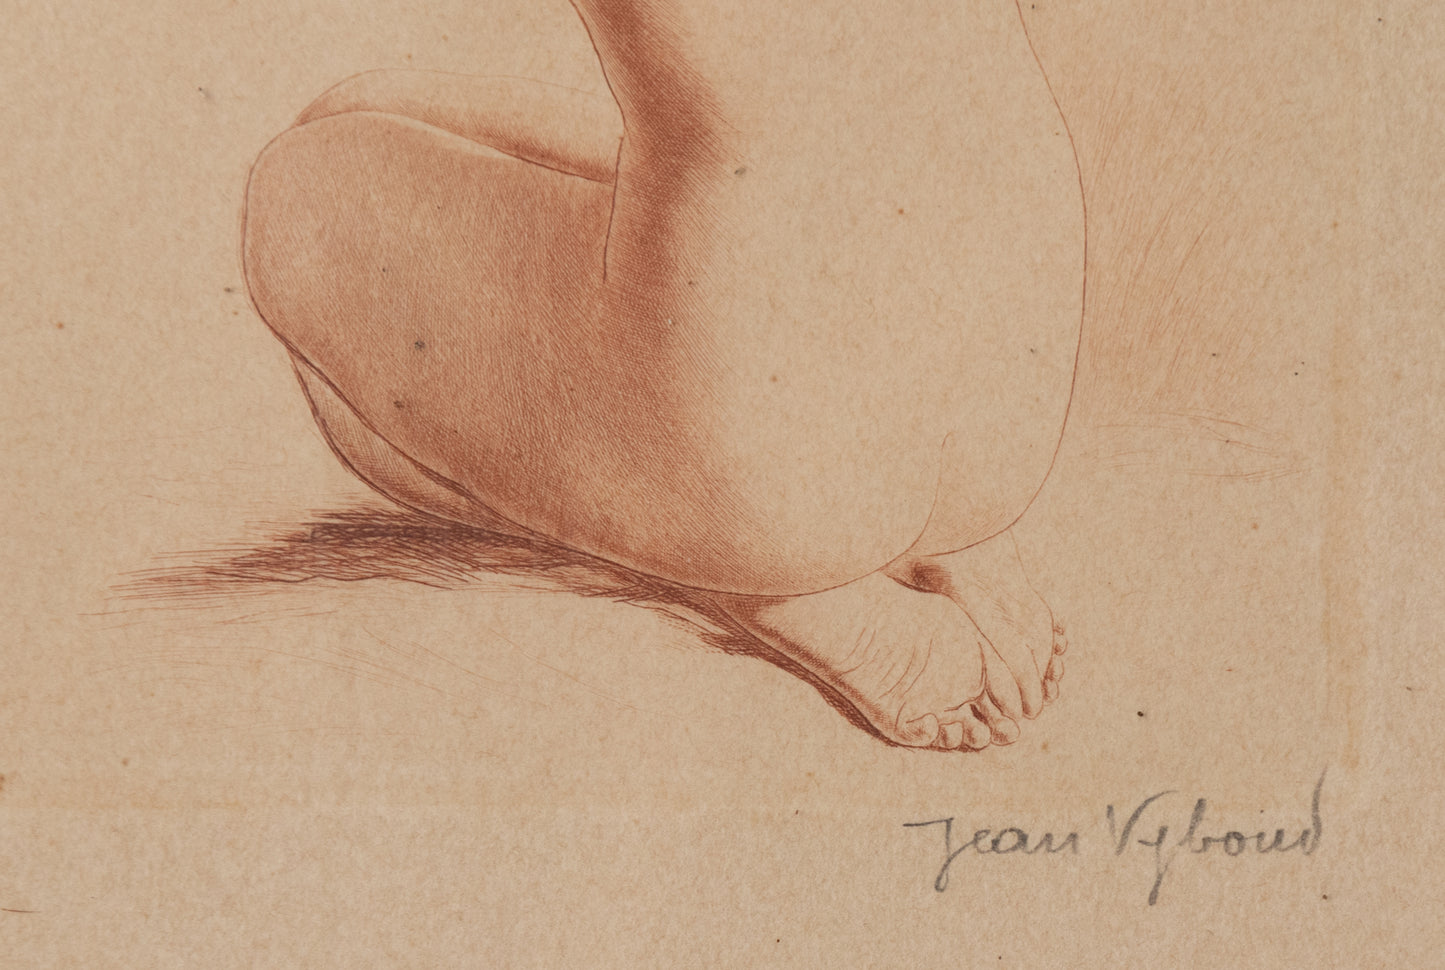 Jean Auguste Vyboud - Two Nude Life Studies